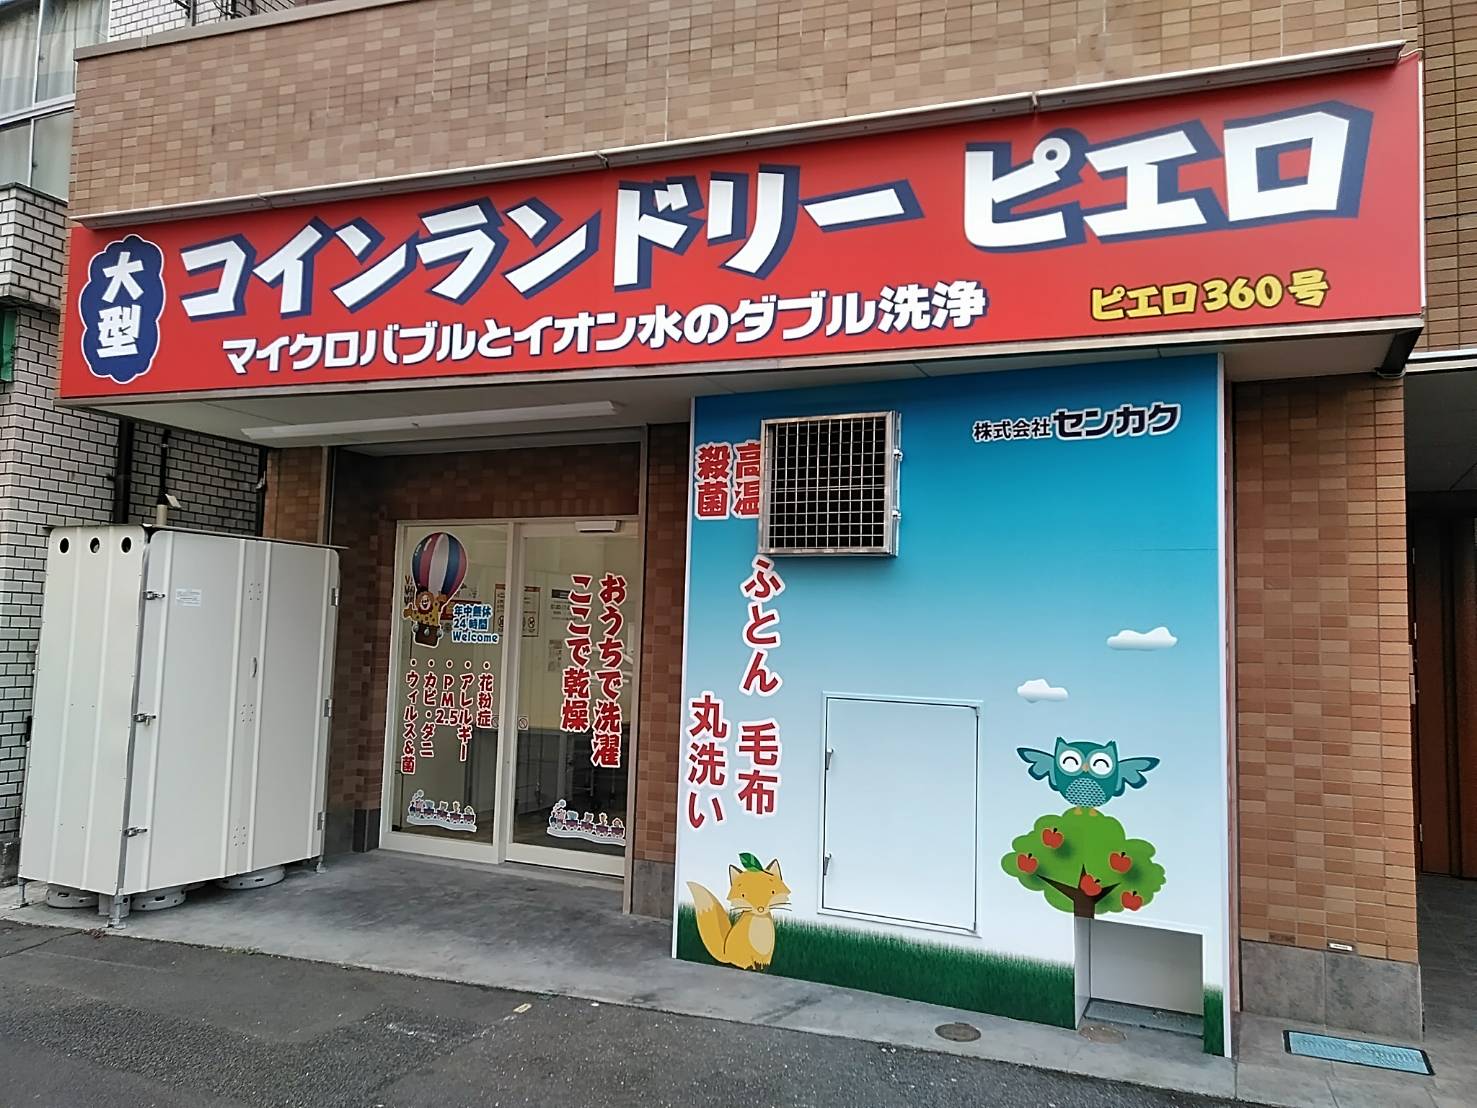 コインランドリーピエロ 360号 東小松川店の写真